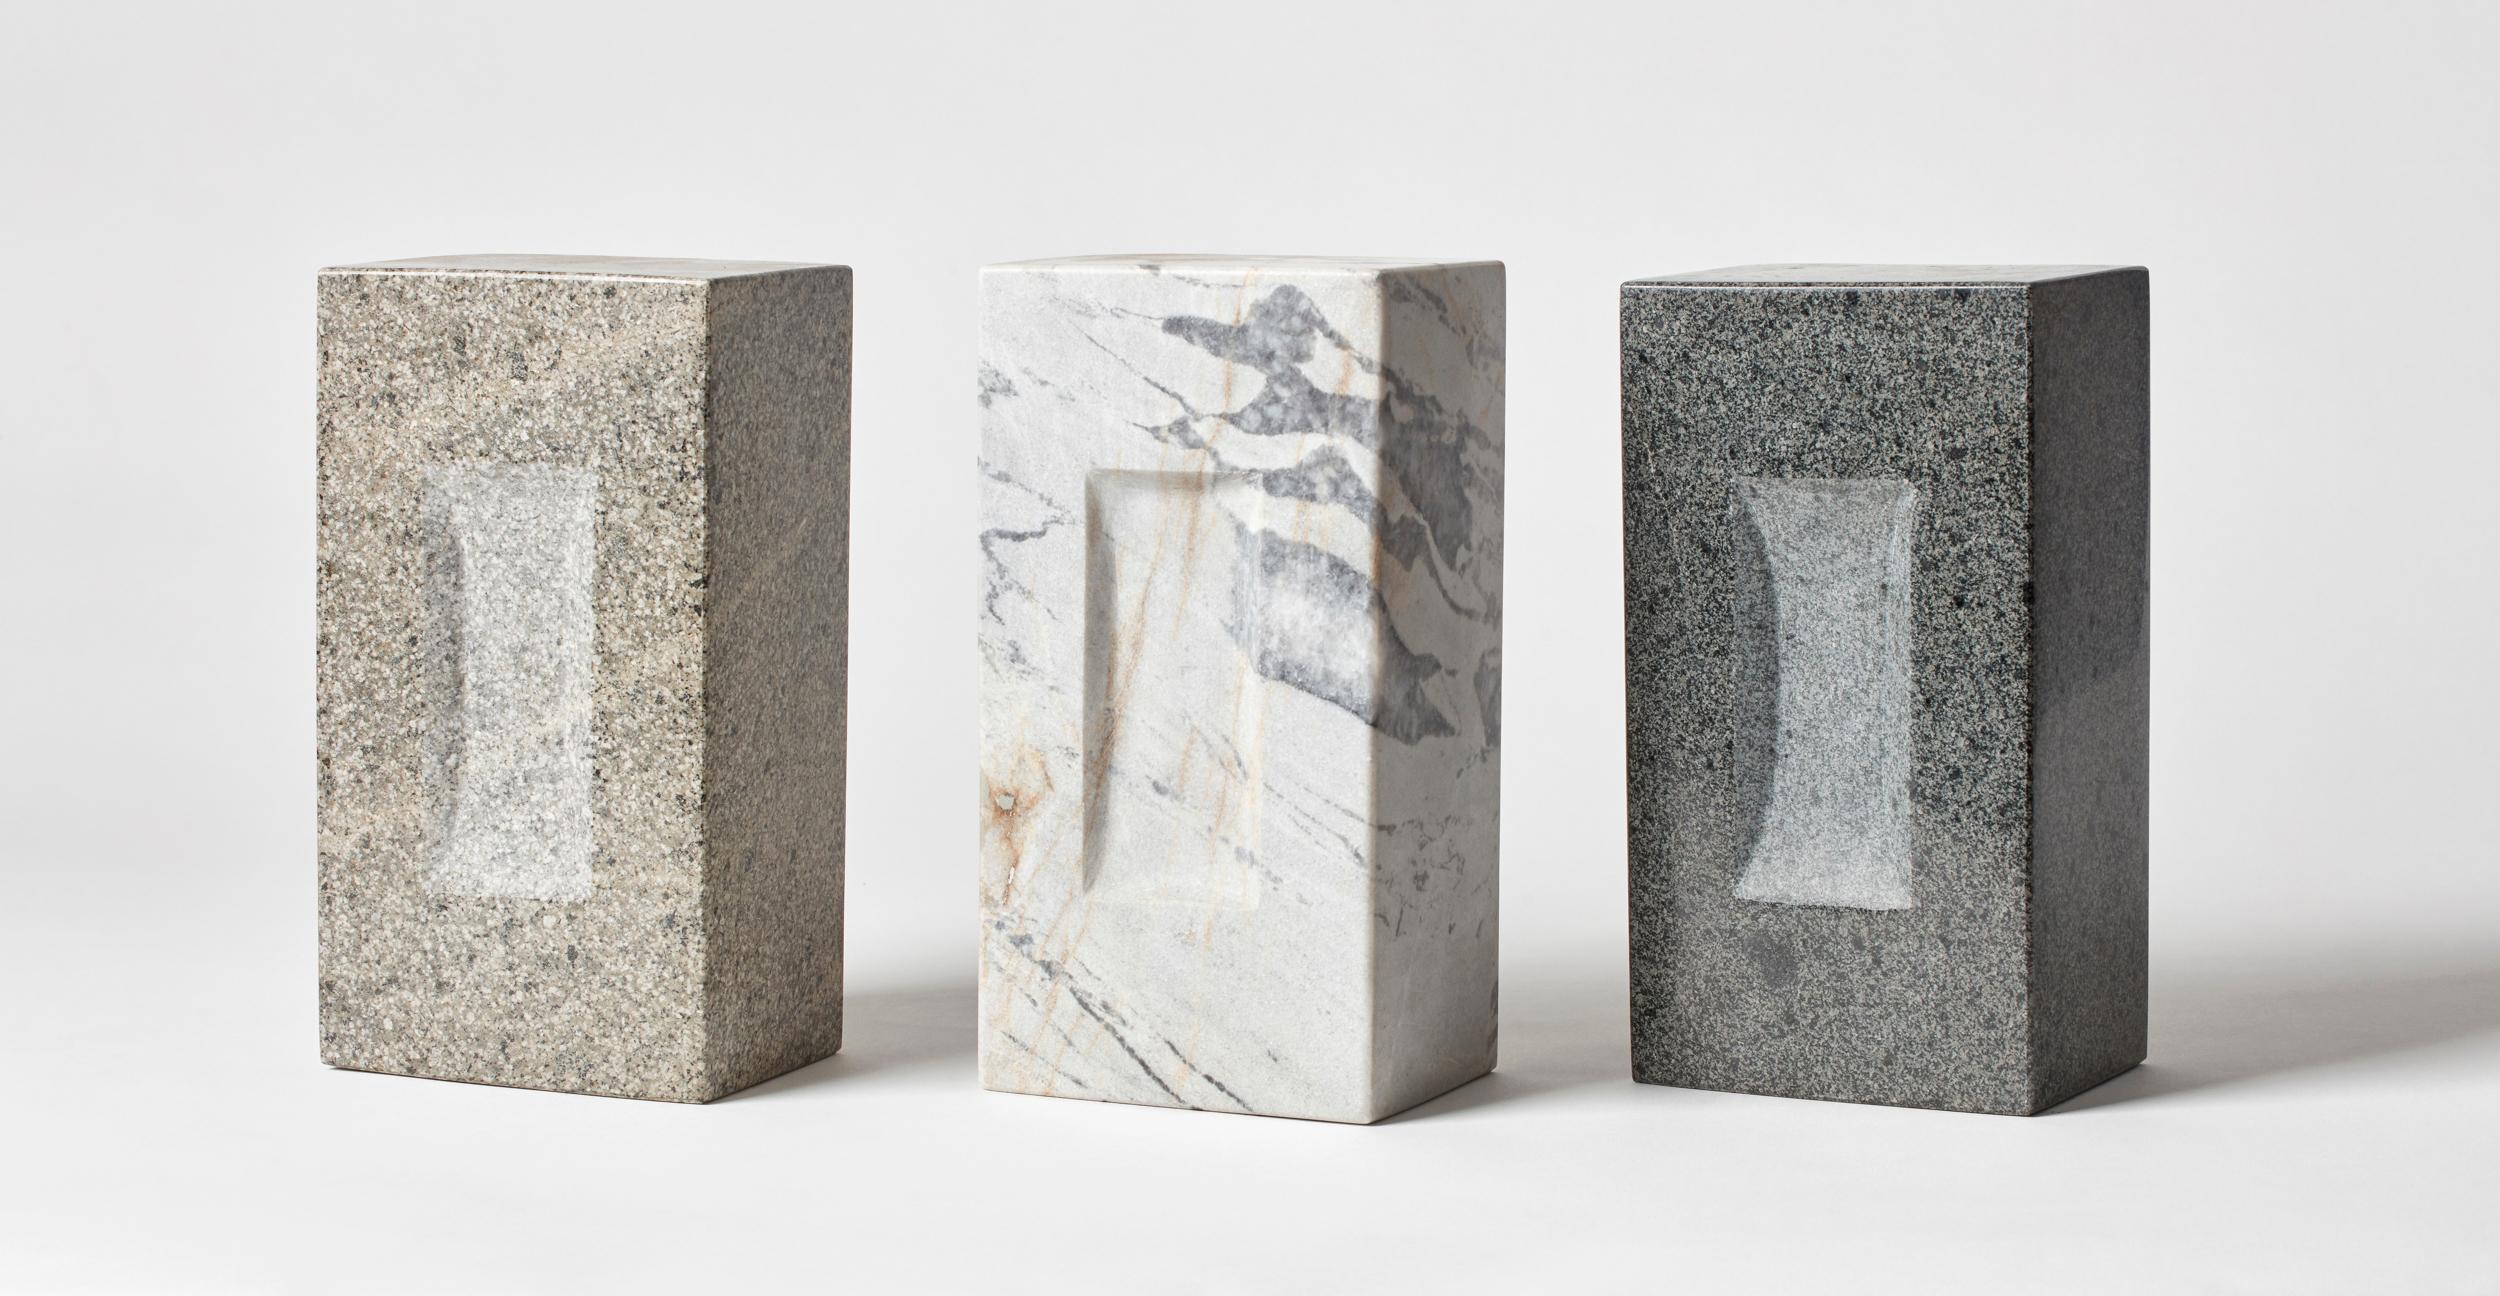 Ensemble de 3 briques par Estudio Rafael Freyre
Dimensions : L 12,5 D 9 x H 23 cm 
Matériaux : Pierres des Andes
Également disponible : Autres finitions disponibles.

La brique est un élément constructif générique qui fait partie de l'imaginaire